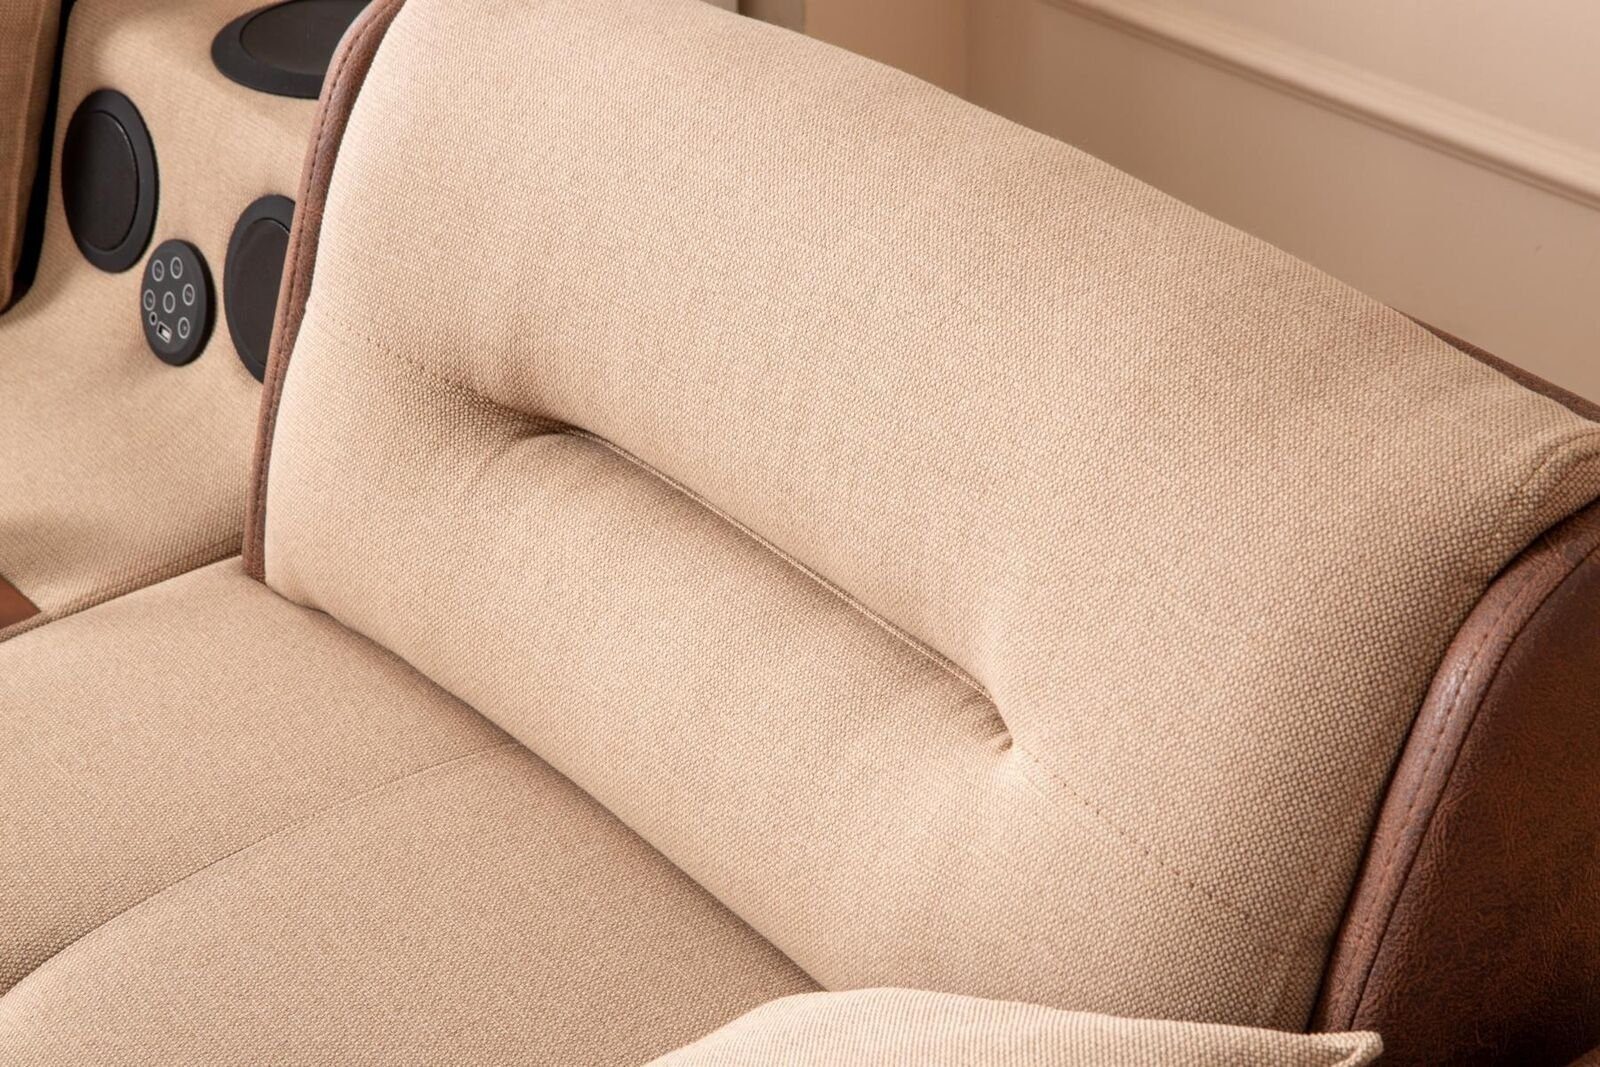 Teile, Ecksofa JVmoebel Multifunktion L-Form Europa Made Couch Möbel in Couchen, 1 Ecksofa Wohnzimmer Beige